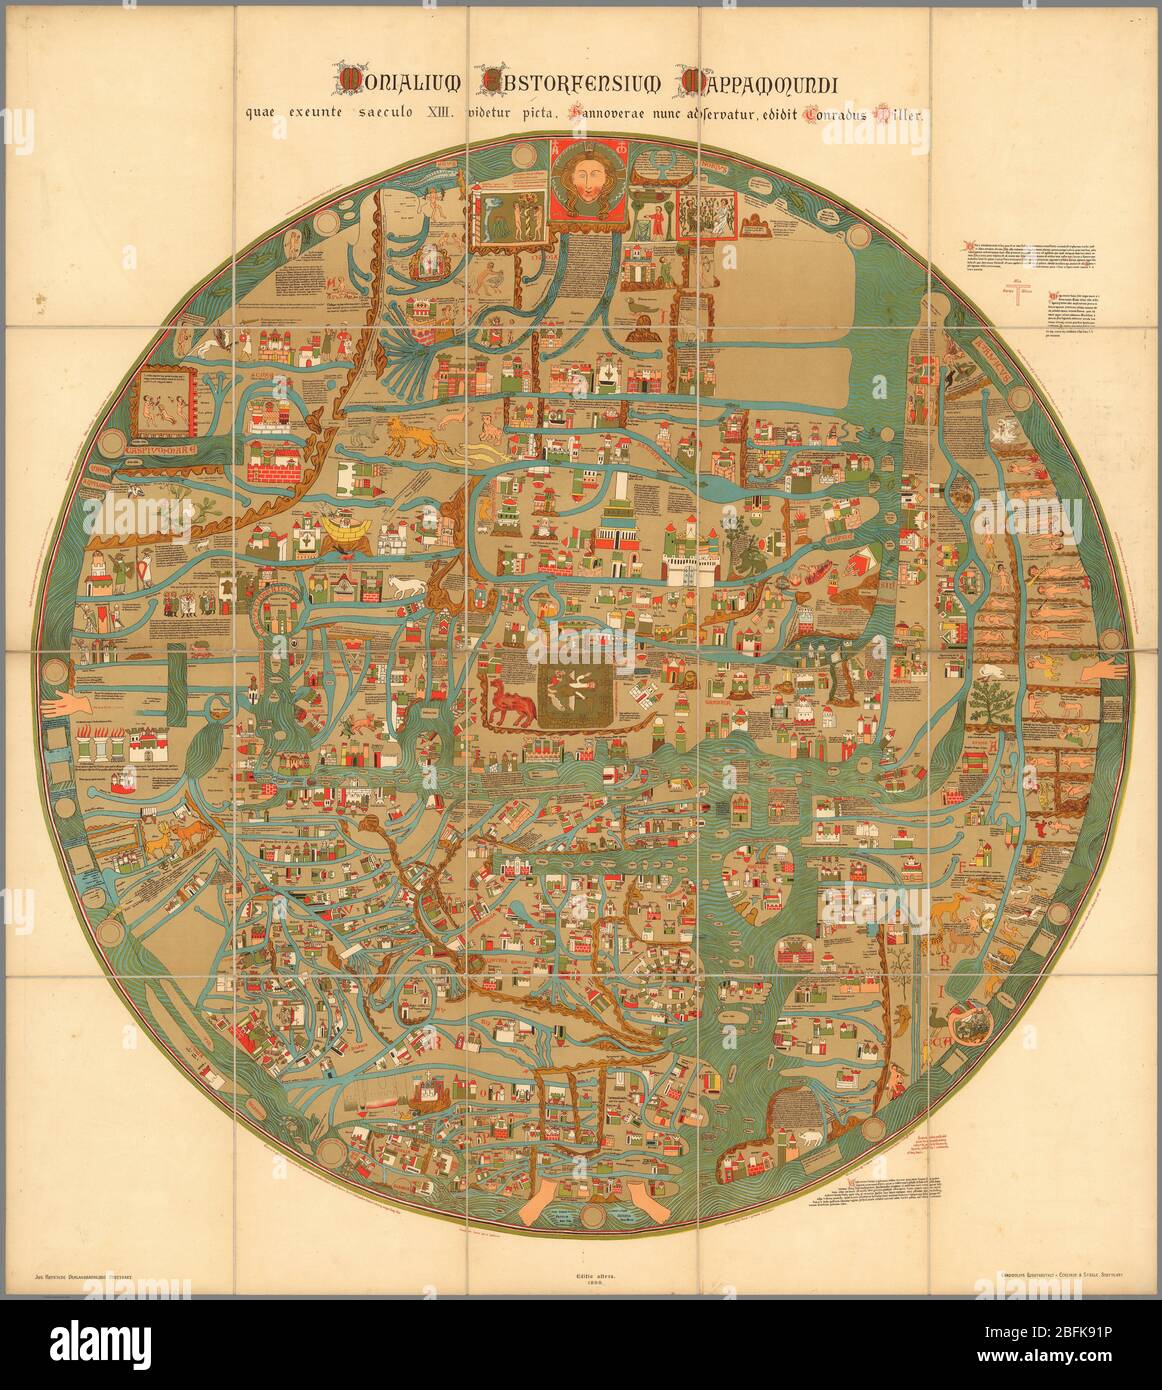 Mapa de Word Monialium Ebstorfensium mappa mundi Publicado en 1898 basado en el mapa del siglo XIII por Gervase de Ebstorf Mapa pictórico circular colorido del mundo, 101 de diámetro, en la hoja 118x106, disectado en 20 secciones 29x21, montado sobre lino. El mapa, impreso en Stuttgart, es una reproducción del famoso mapa de Ebstorf que fue destruido en 1943. Este grande y circular 'mappa mundi', de Gervase de Ebstorf, es uno de los mapas históricos más famosos del siglo XIII del mundo. Con símbolos comunes de manuscritos medievales y las formas medievales de nombres de lugares, refleja las ideas religiosas contemporáneas de la Foto de stock